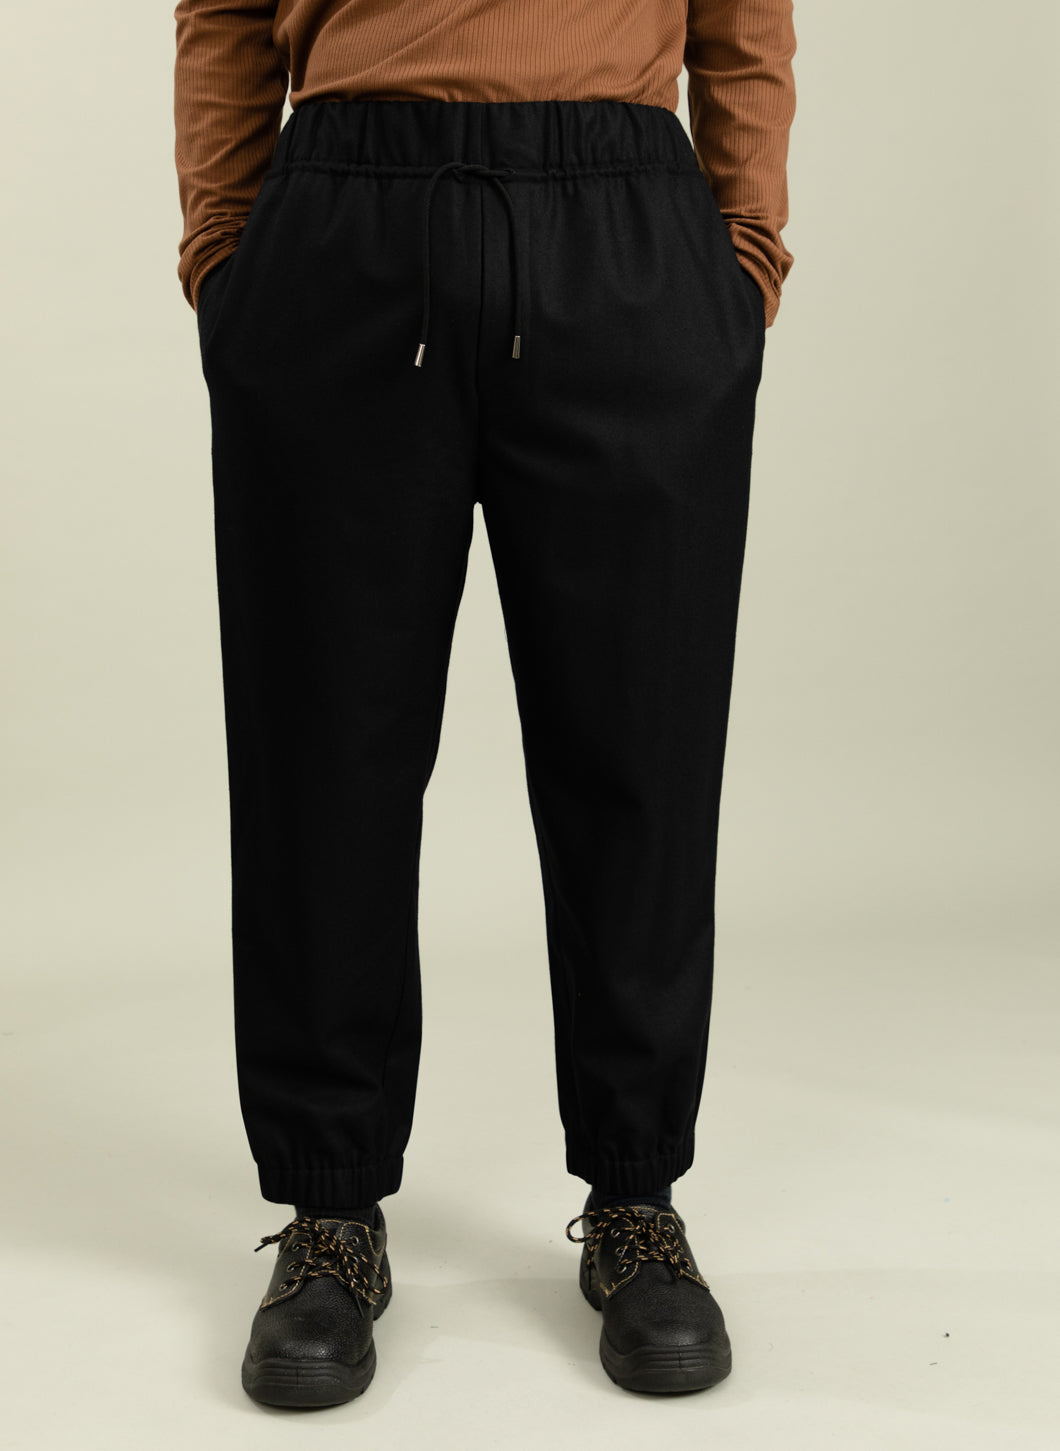 Elastic Waist Pants in Black Flannel Wool